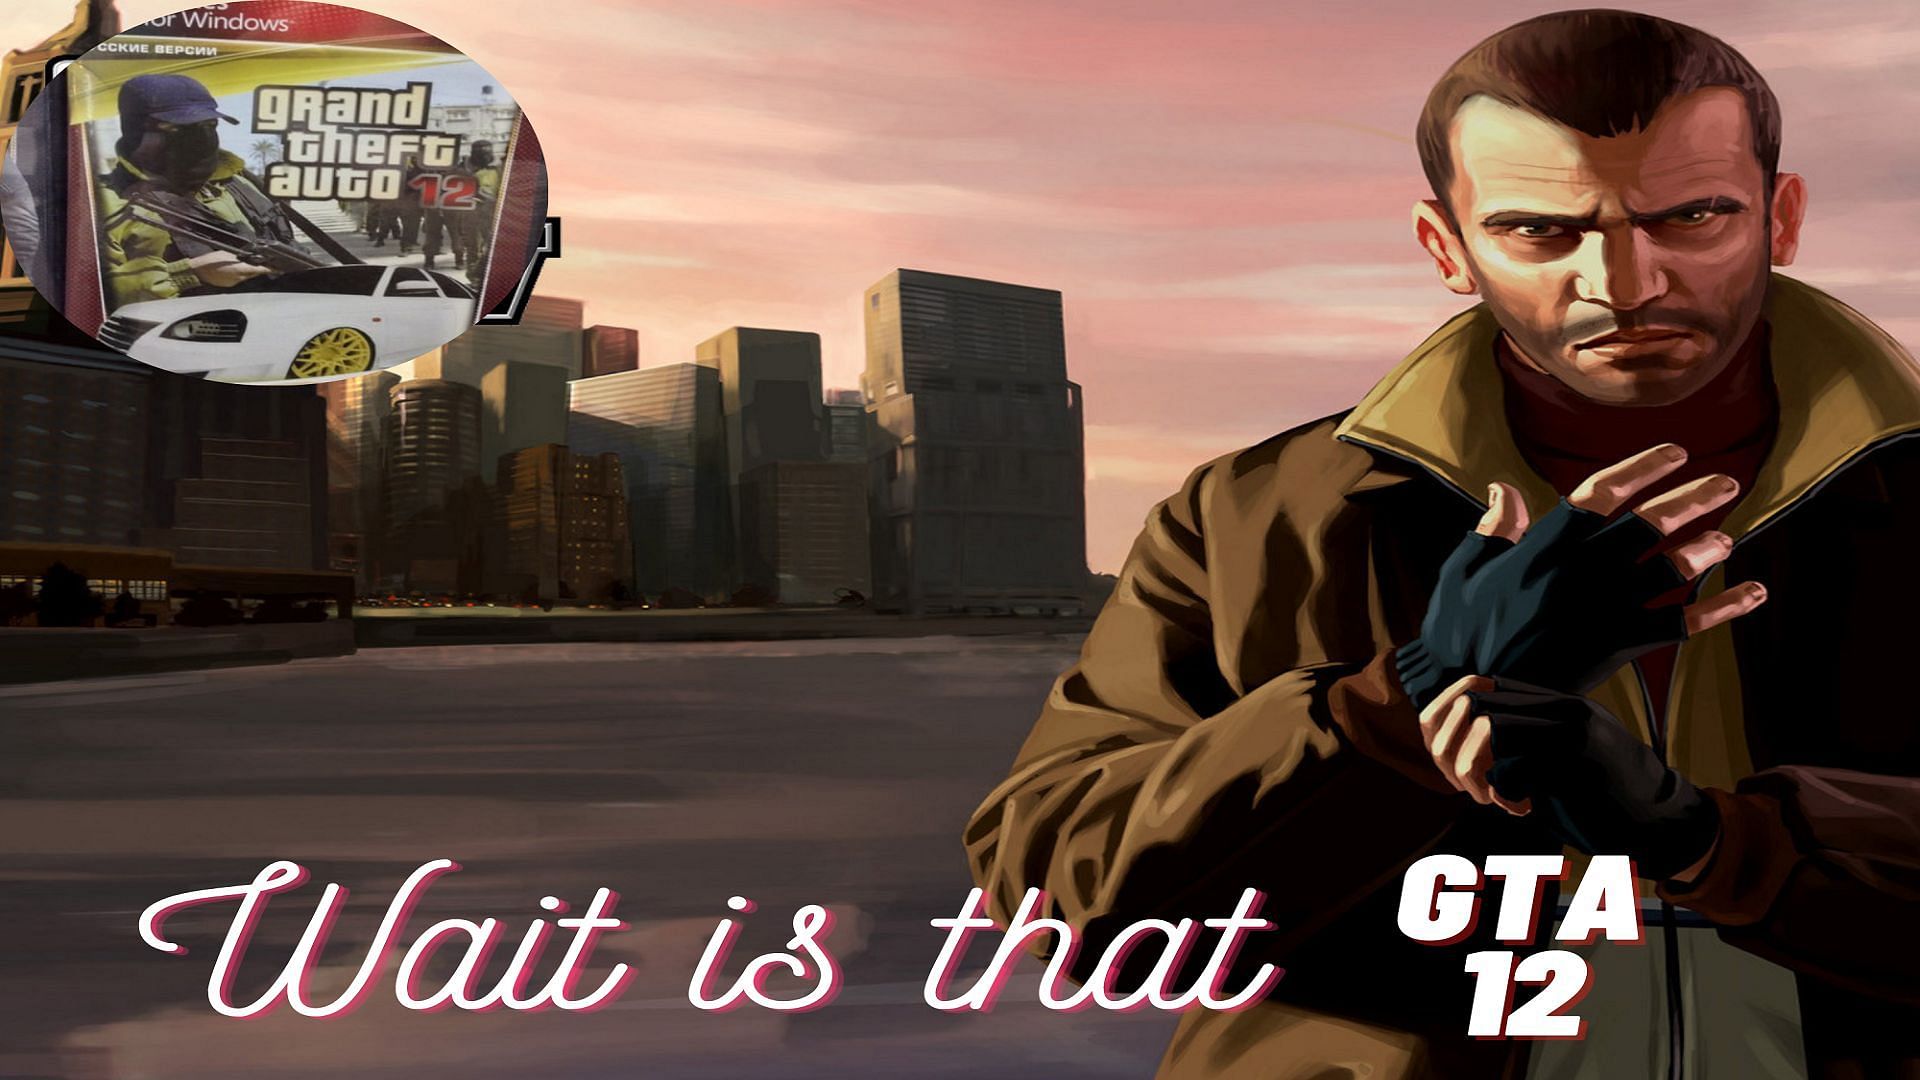 Niko Bellic modded into GTA V : r/gaming